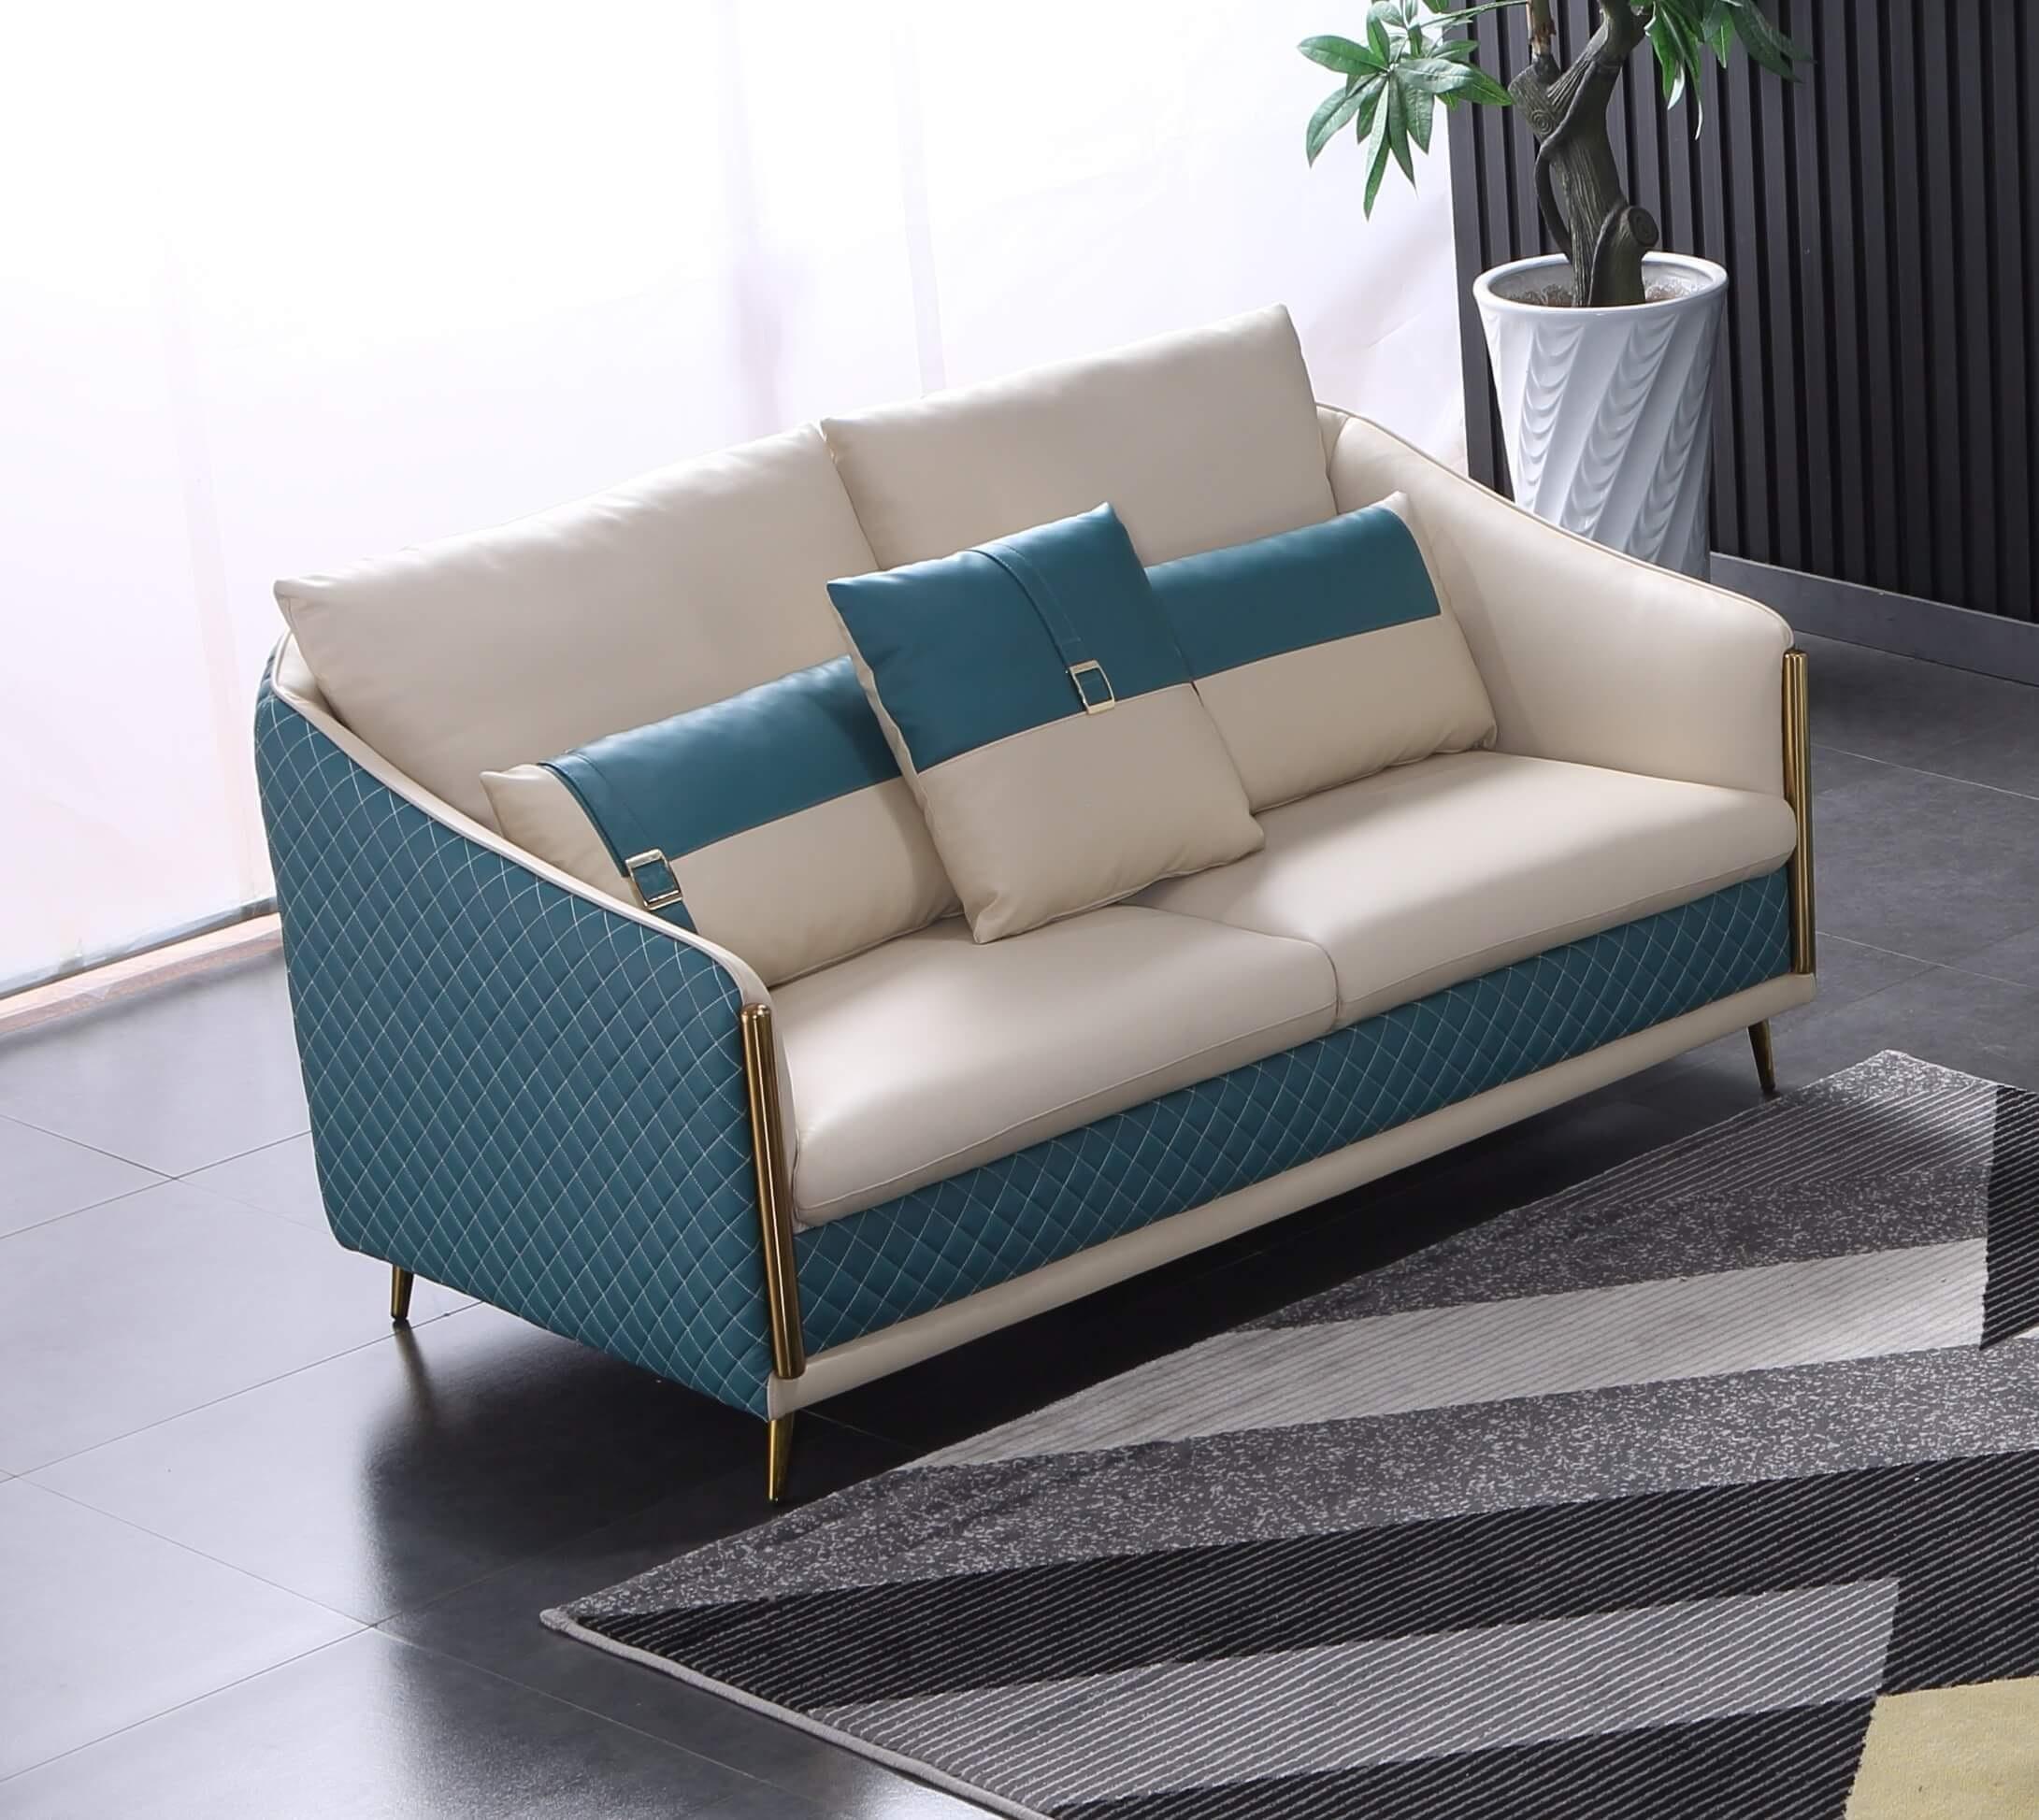 

                    
EUROPEAN FURNITURE ICARO Sofa Set Off-White/Blue Italian Leather Purchase 
